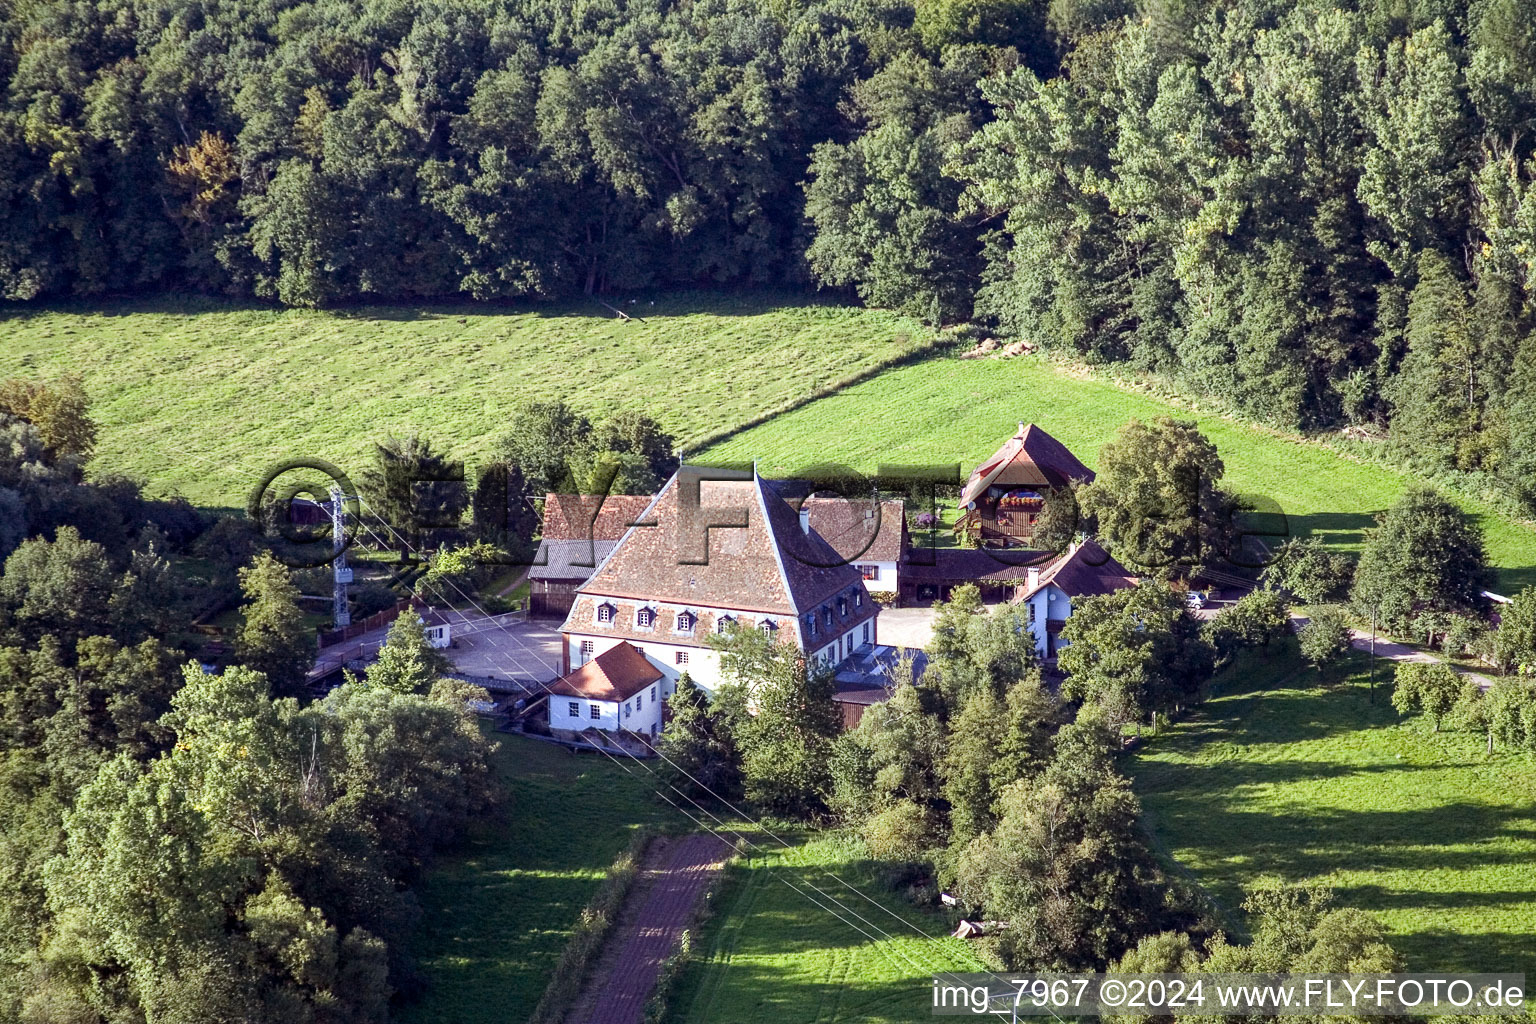 Historische Wassermühle am Gehöft eines Bauernhofes am Rand von bestellten Feldern im Ortsteil Bienwaldmühle in Scheibenhardt im Bundesland Rheinland-Pfalz, Deutschland